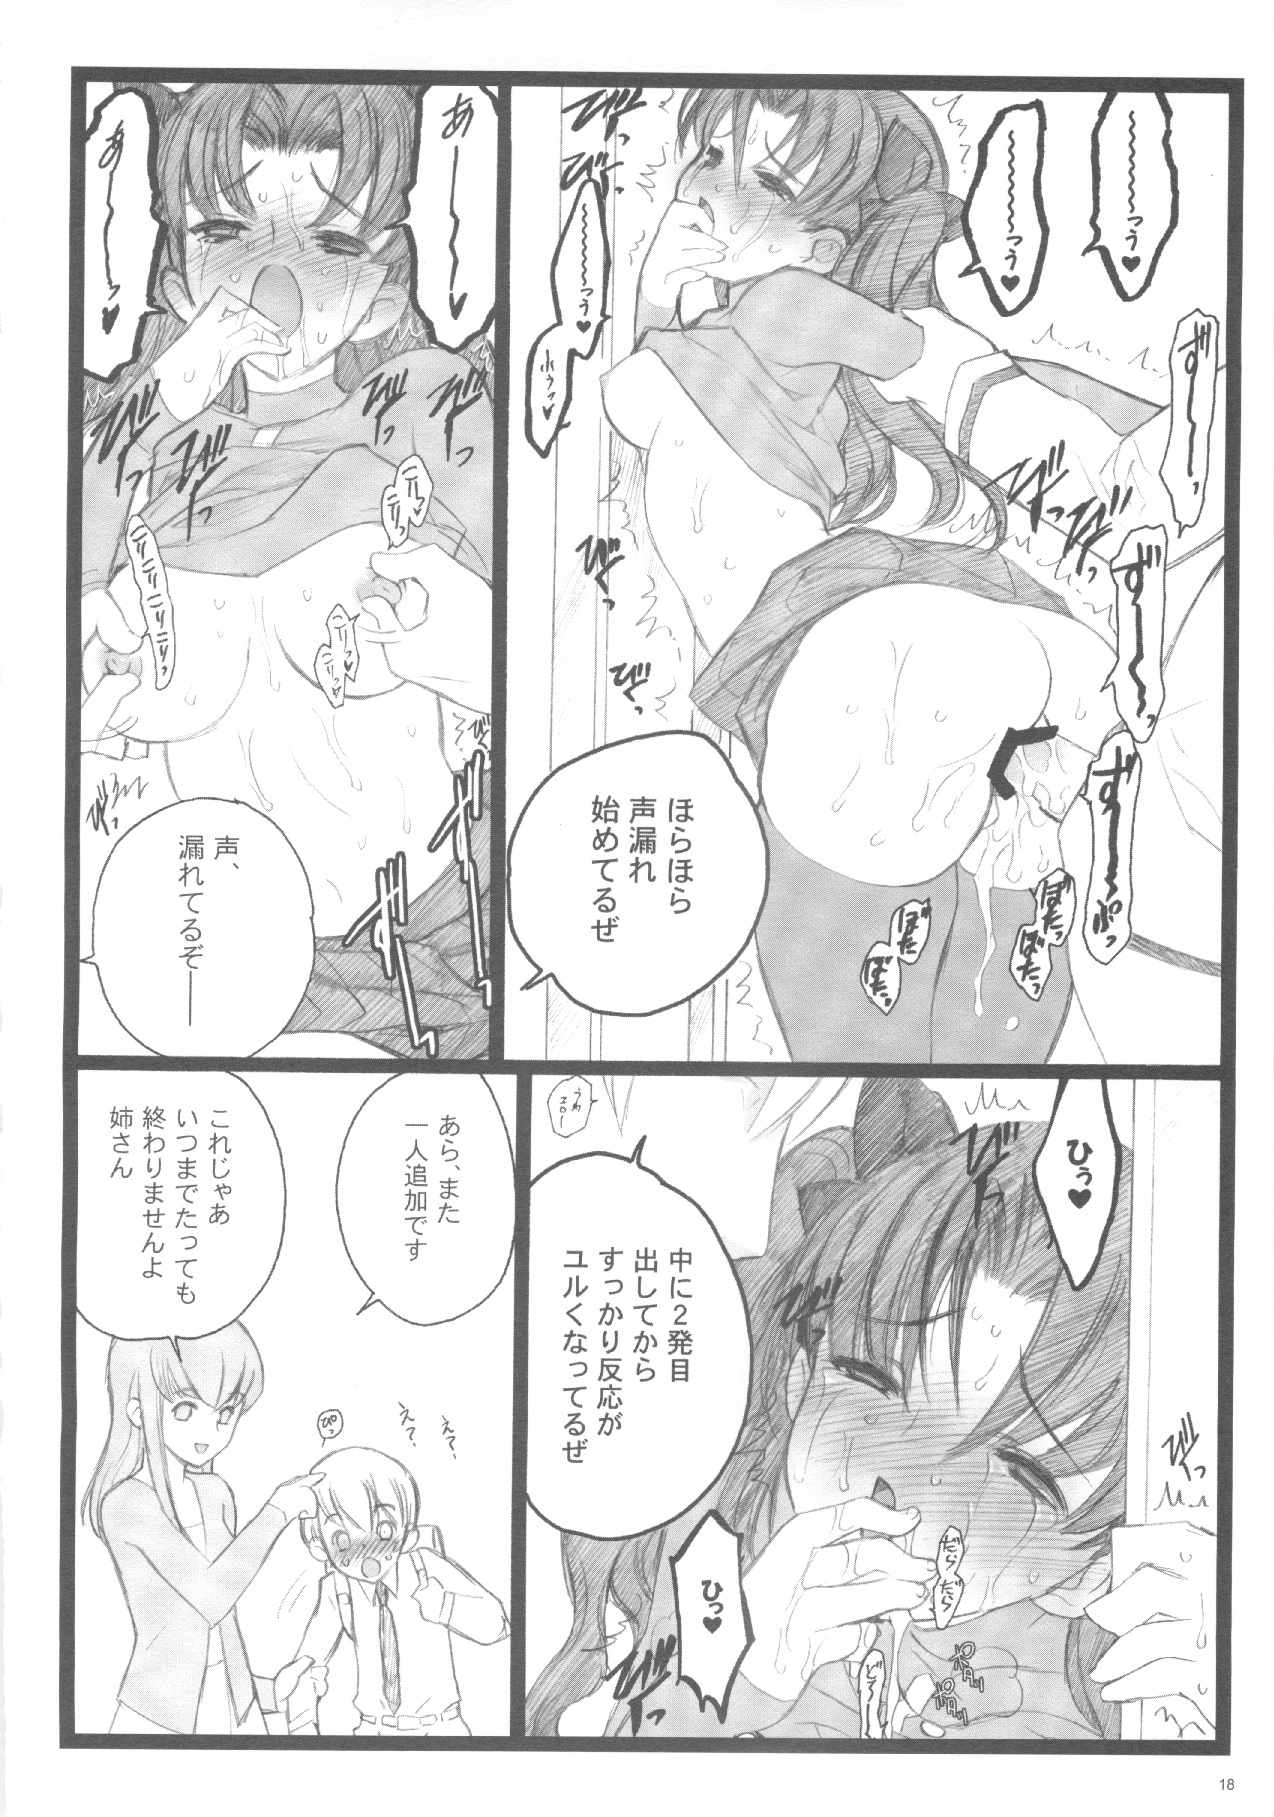 (C71) [Keumaya (Inoue Junichi)] Walpurugisnacht 3 / Walpurgis no Yoru 3 (Fate/stay night) page 17 full